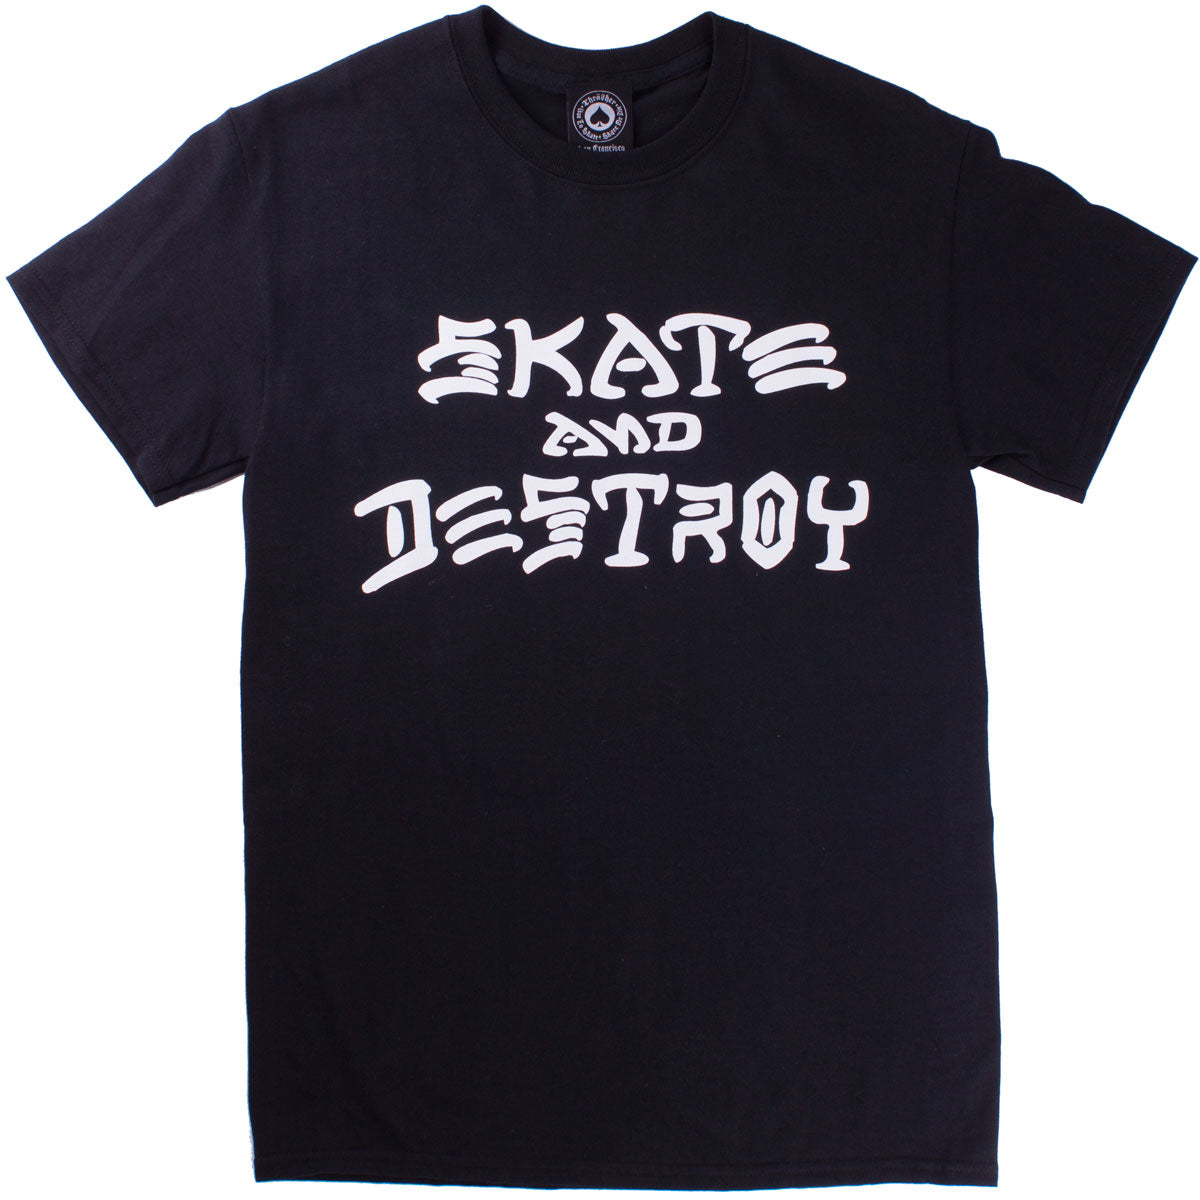 Thrasher Skate And Destroy T-Shirt - Black image 1